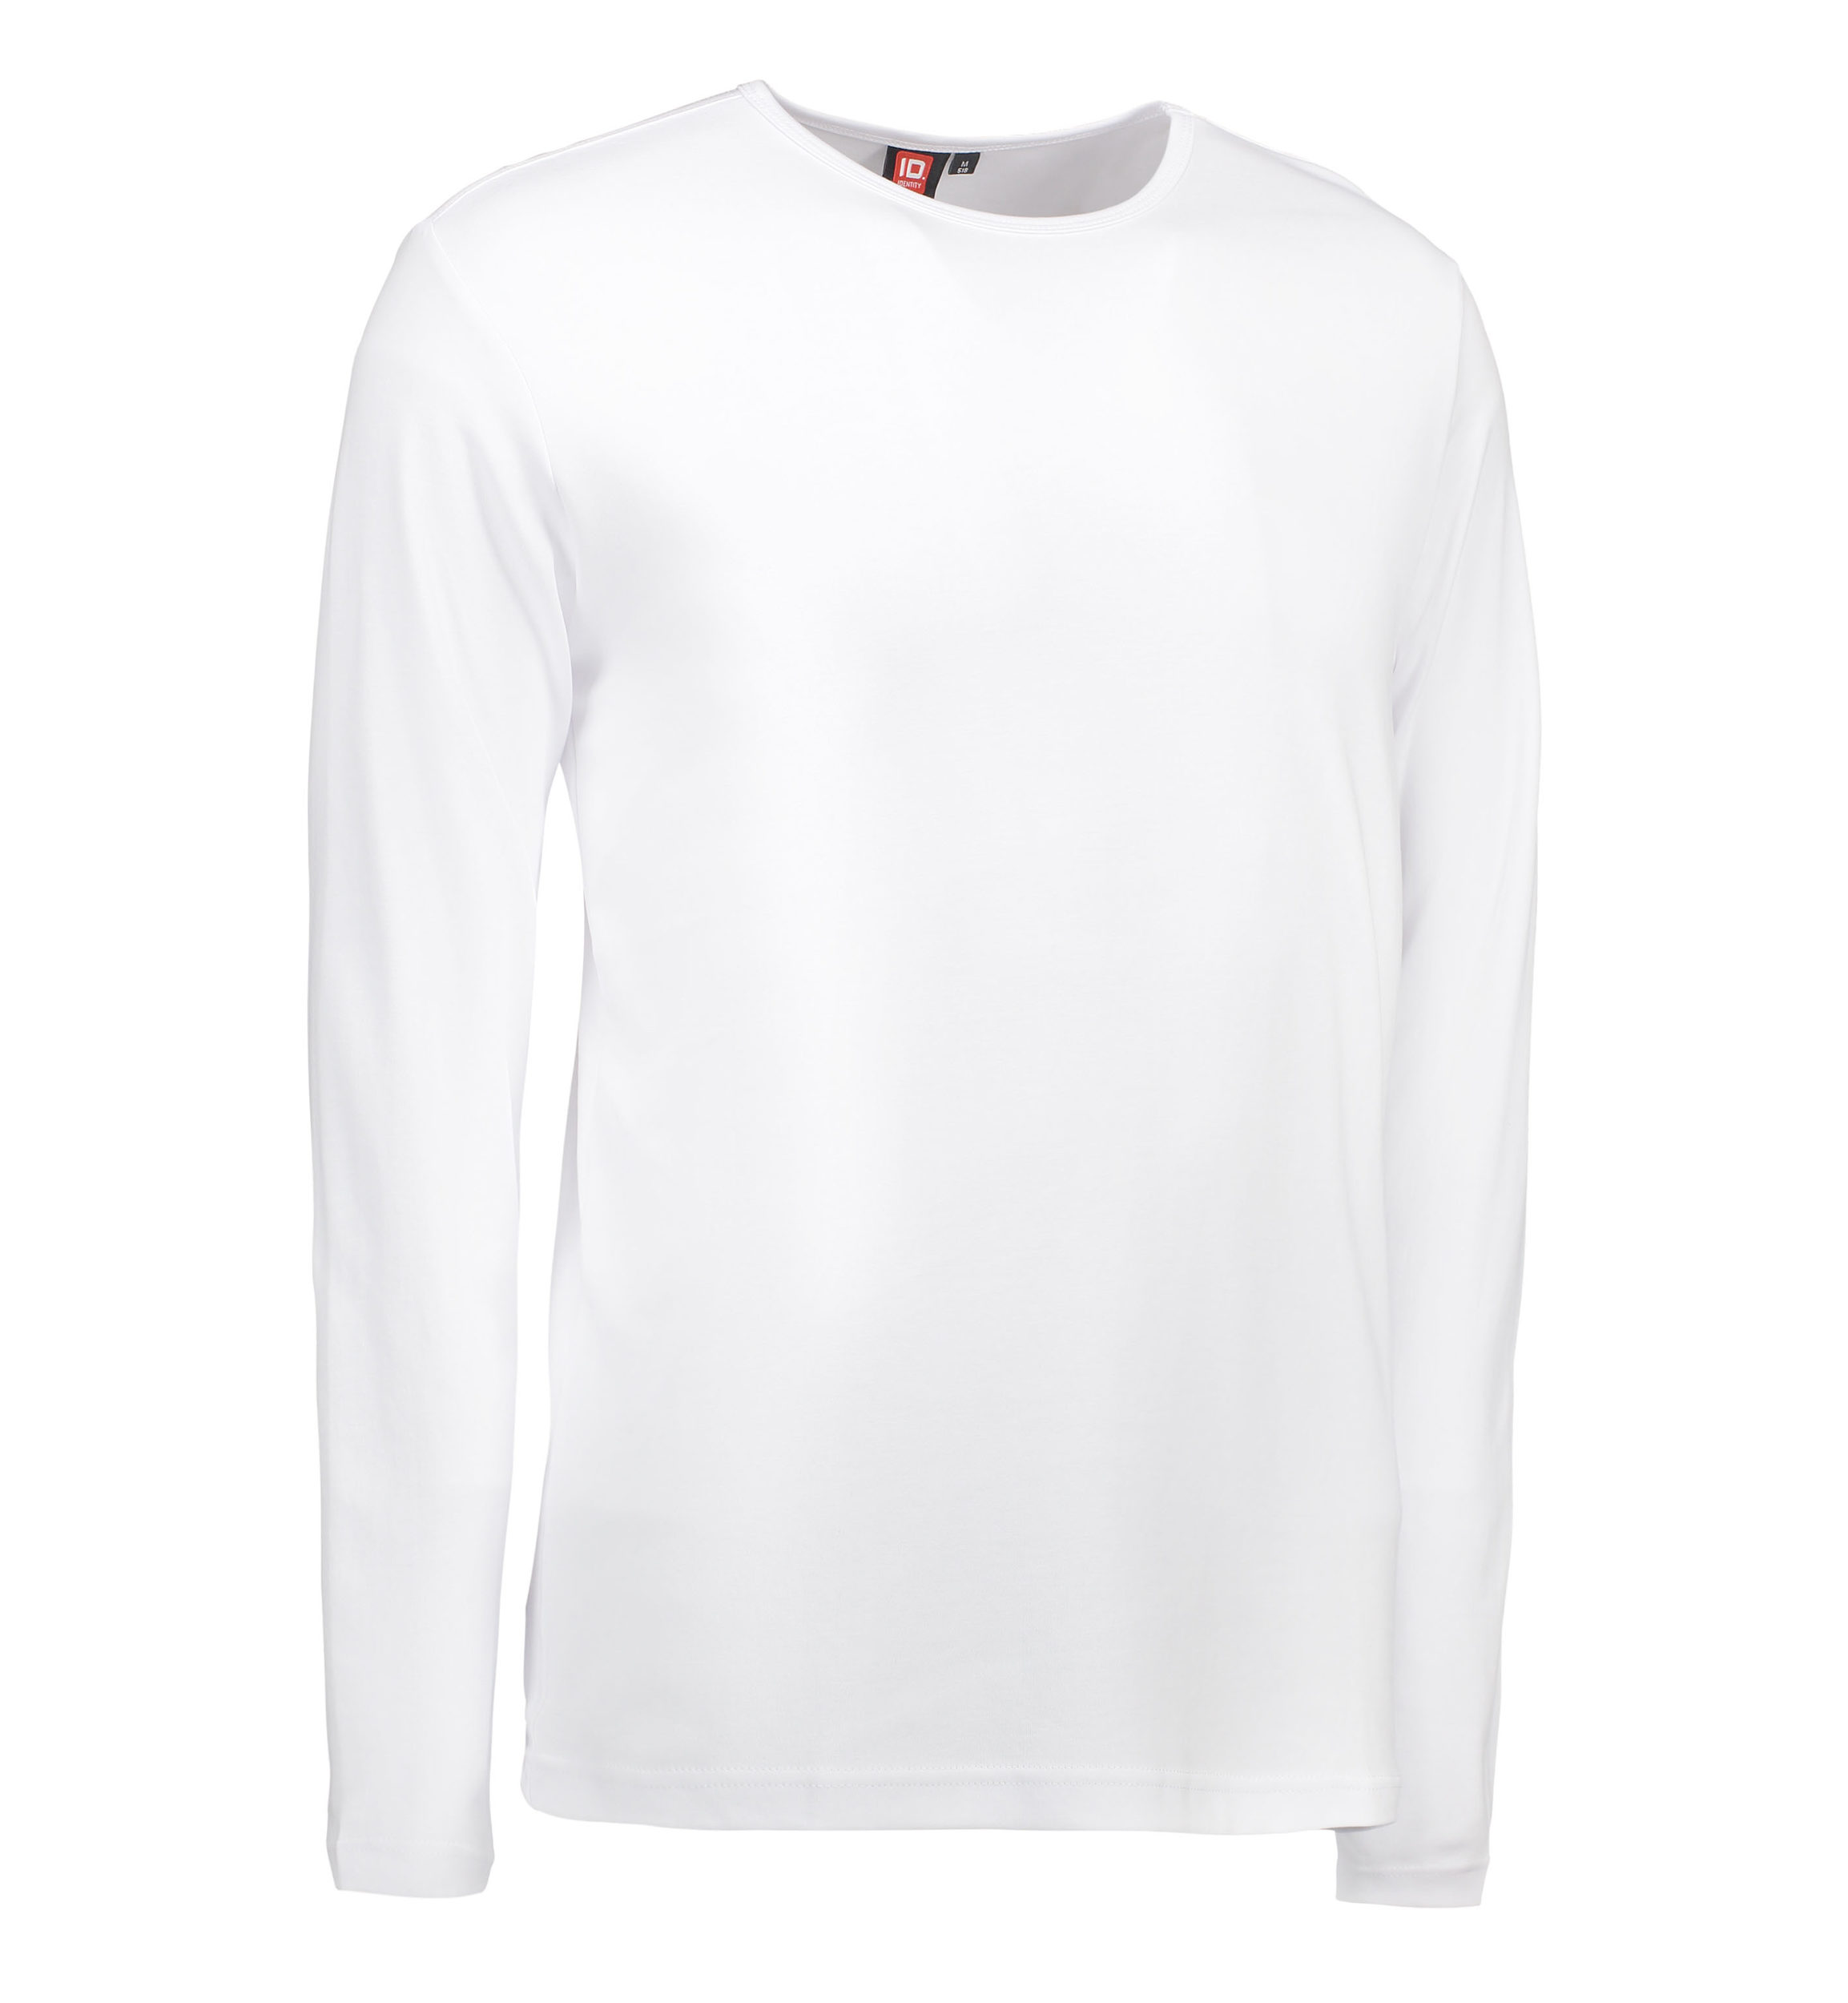 Billede af Hvid langærmet t-shirt til mænd - 2XL hos Sygeplejebutikken.dk